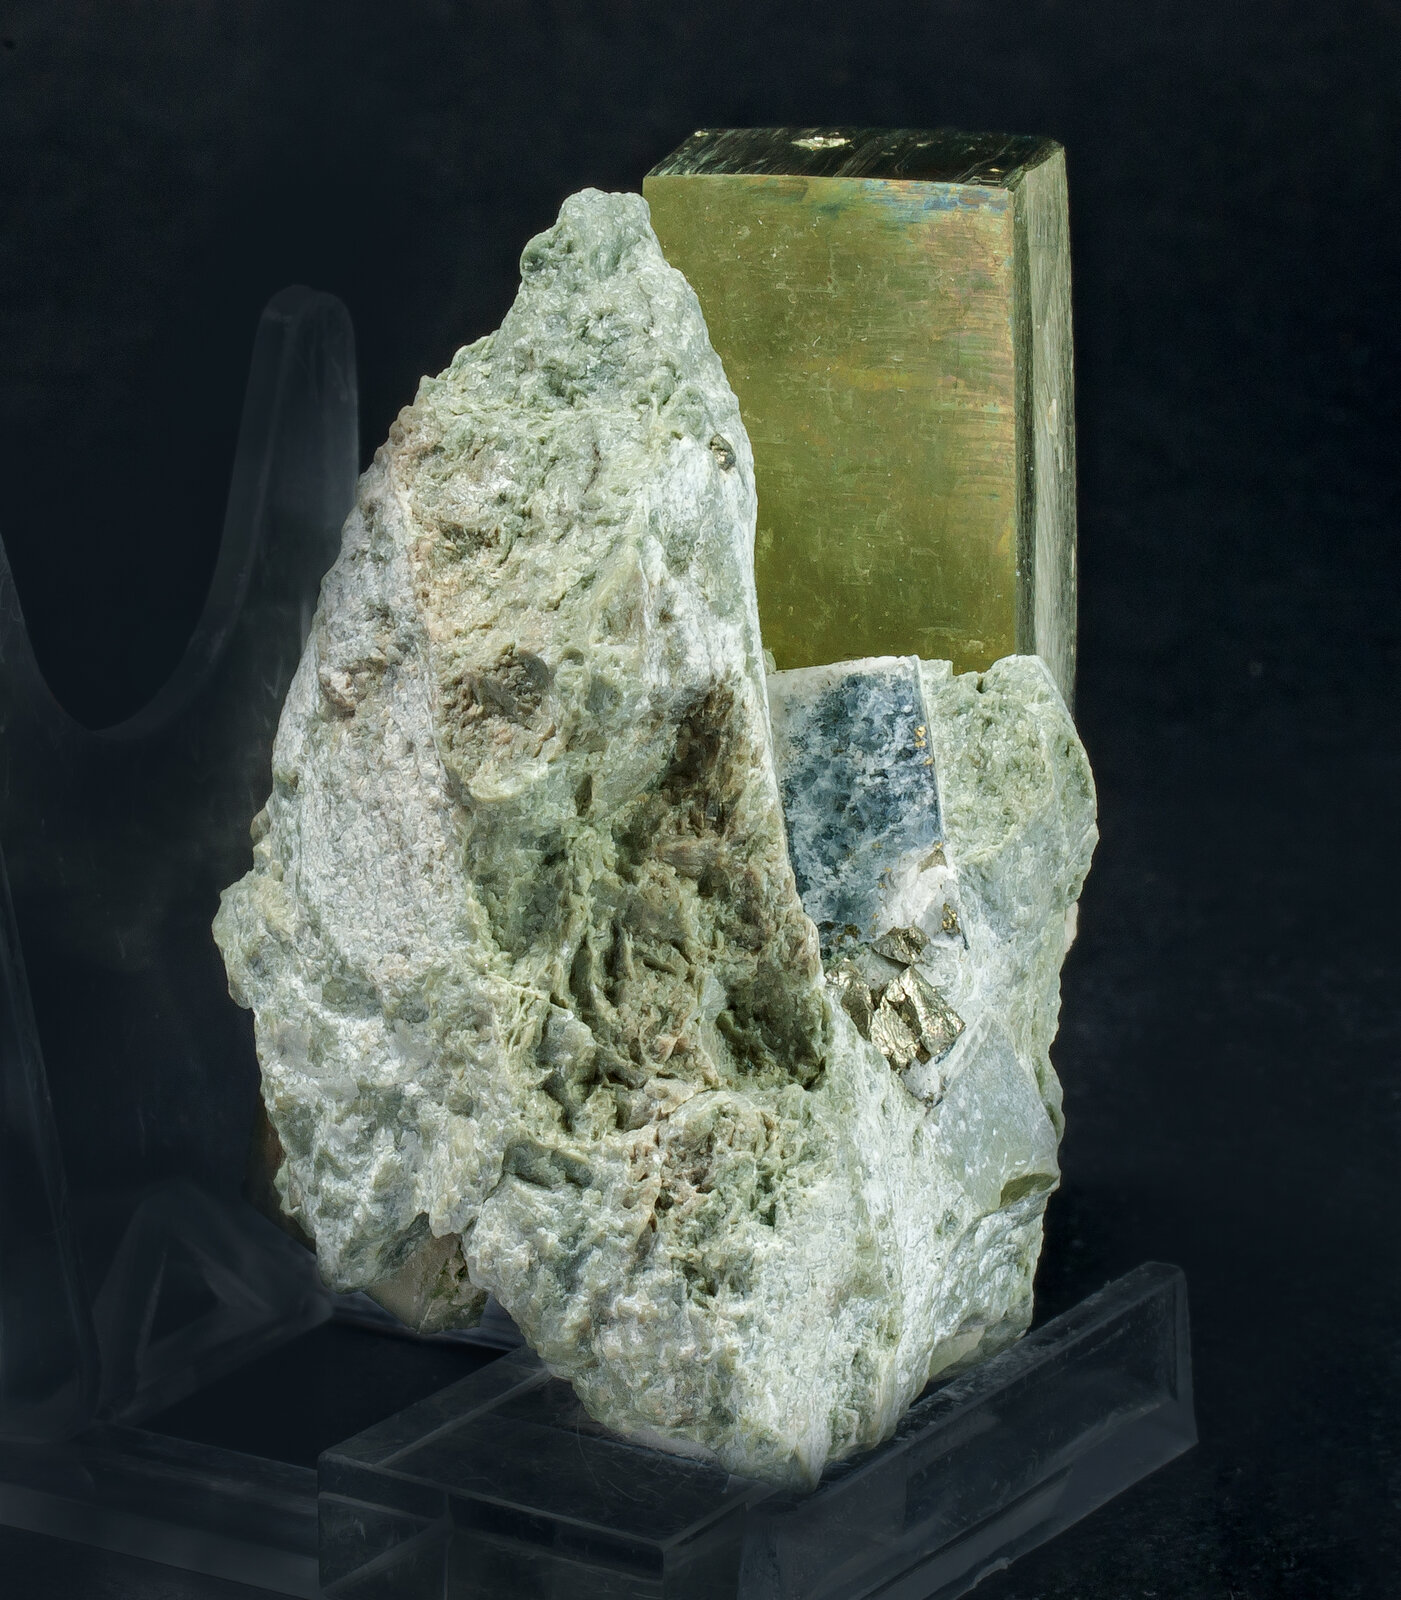 specimens/s_imagesAO5/Pyrite-NEA97AO5s2.jpg